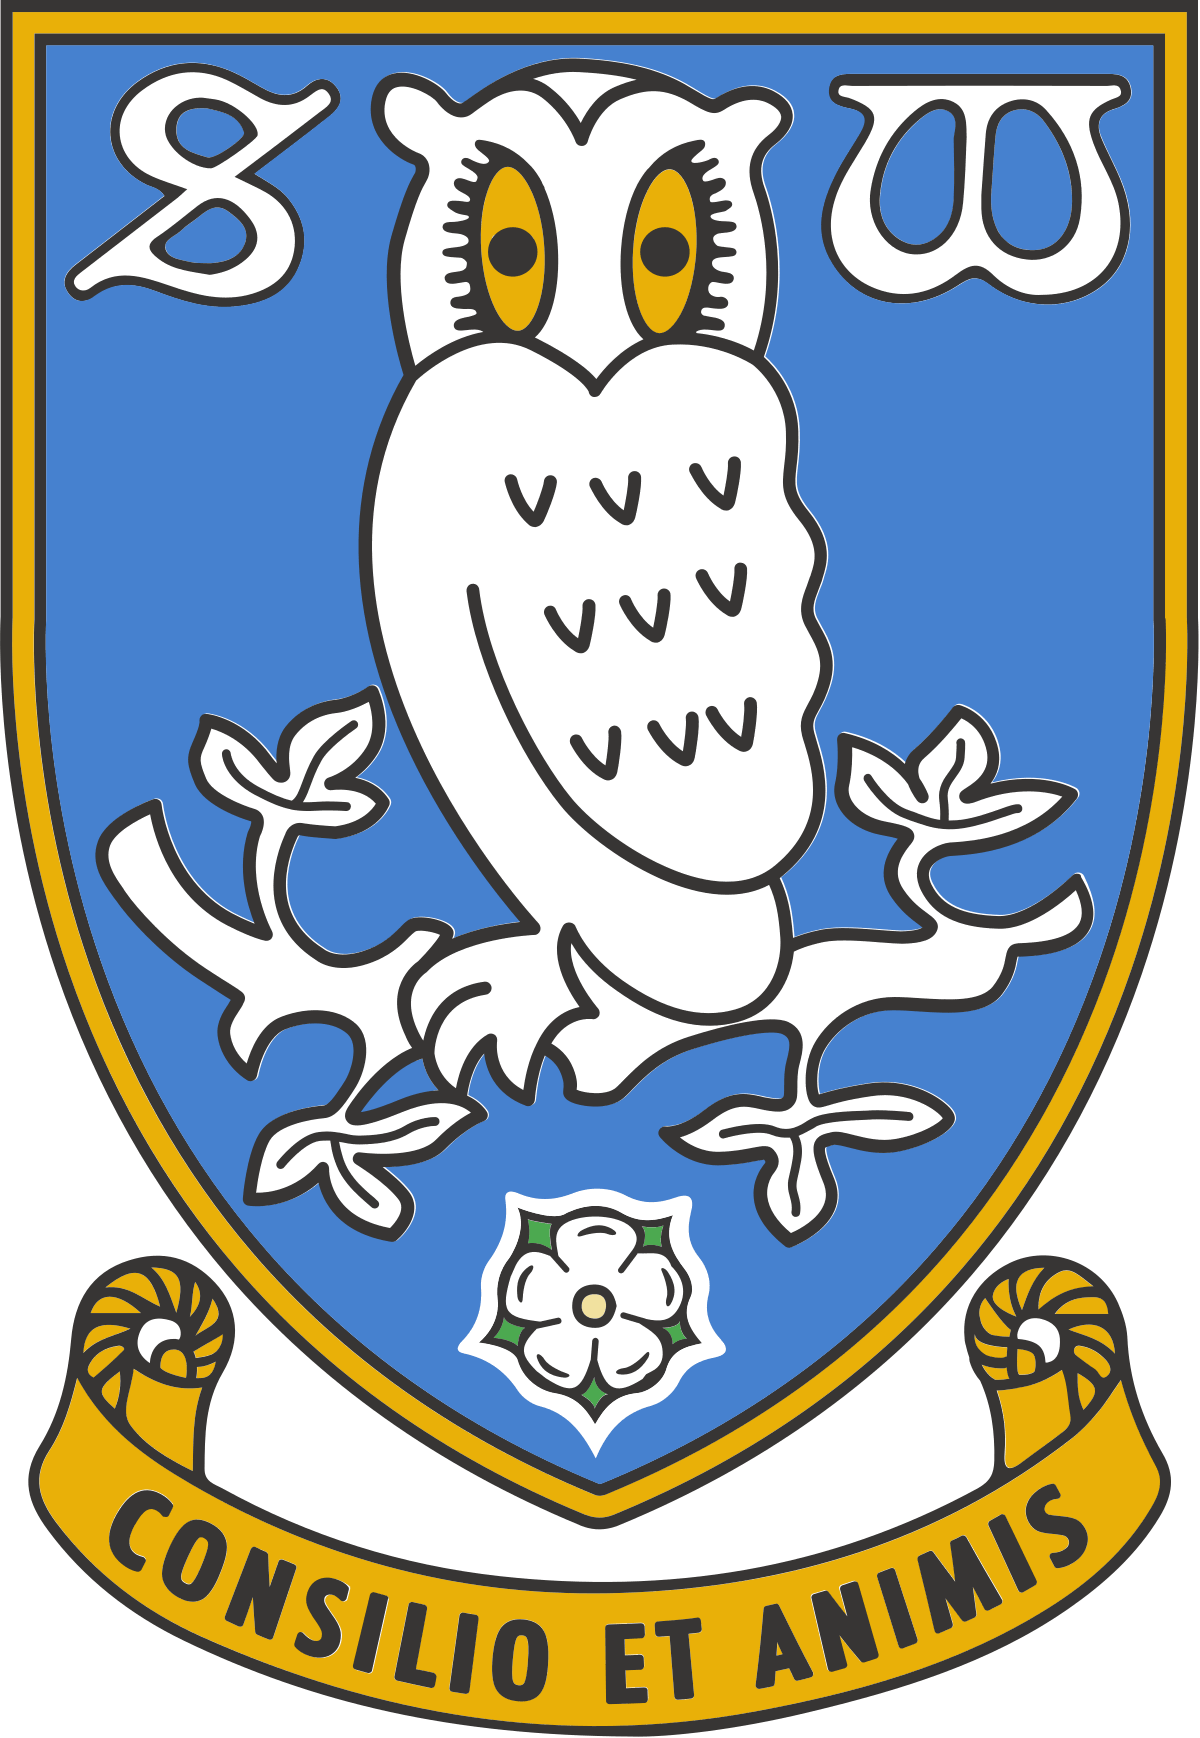 Sheffield Logo - Sheffield Wednesday F.C.